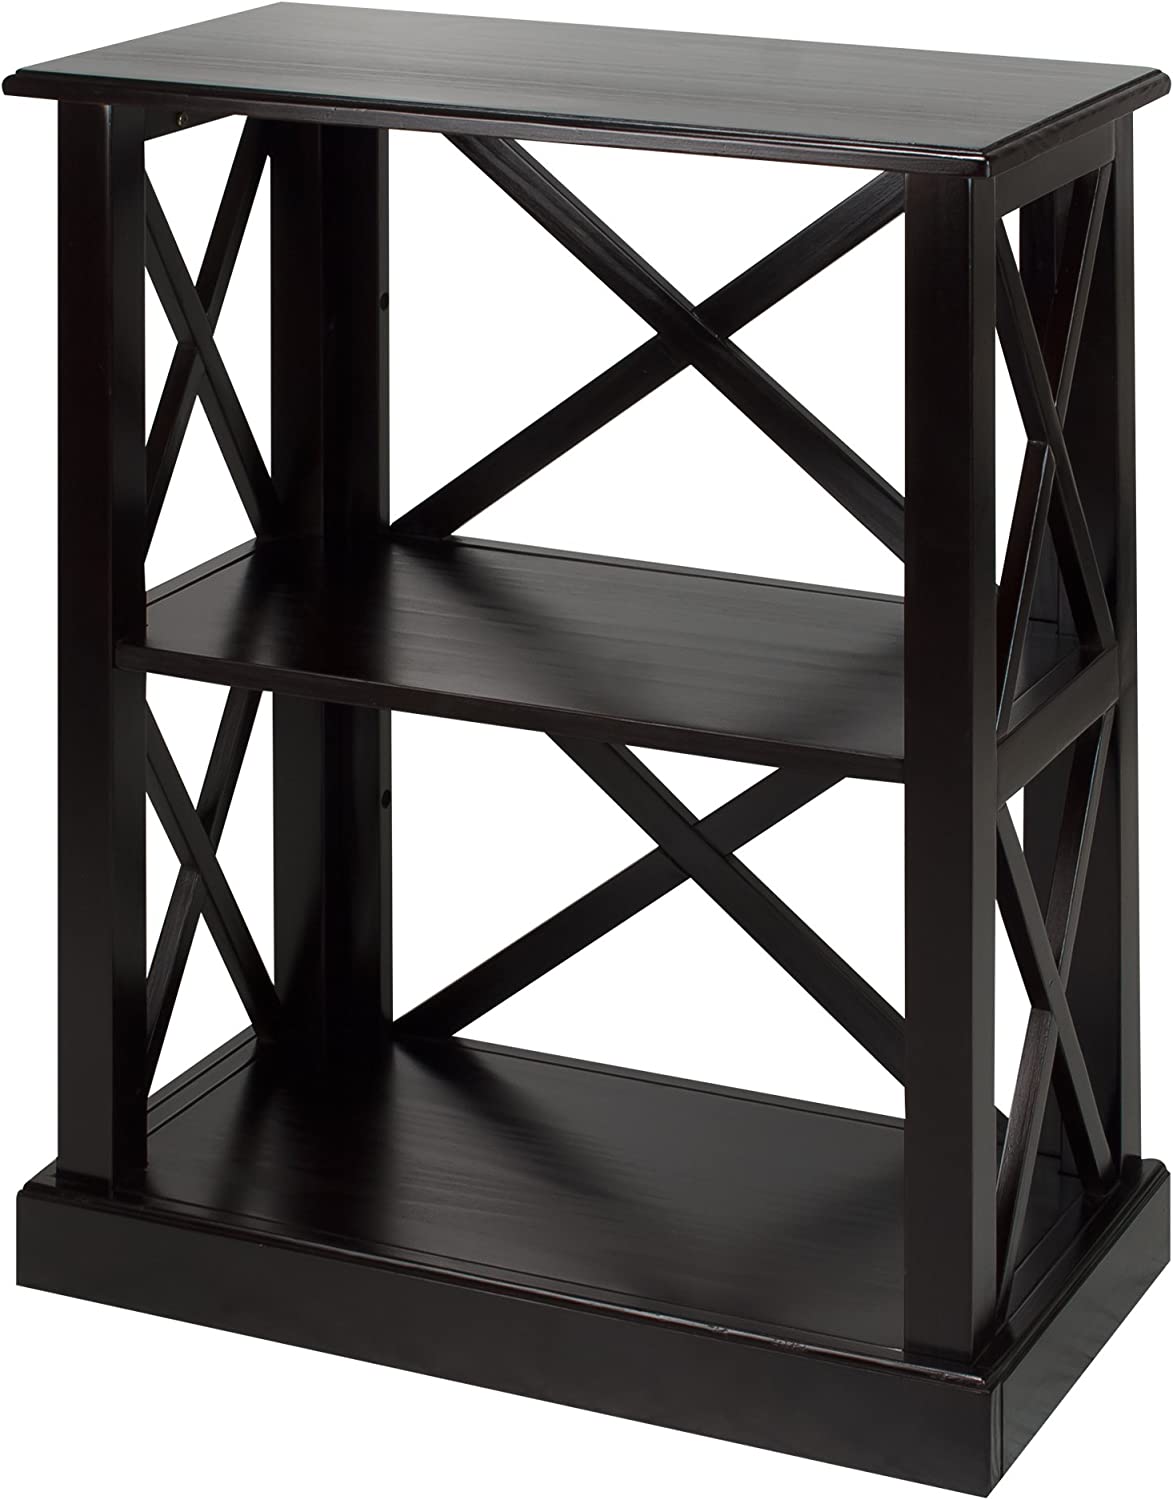 Casual Home Box Spring, 3-Shelf, Black